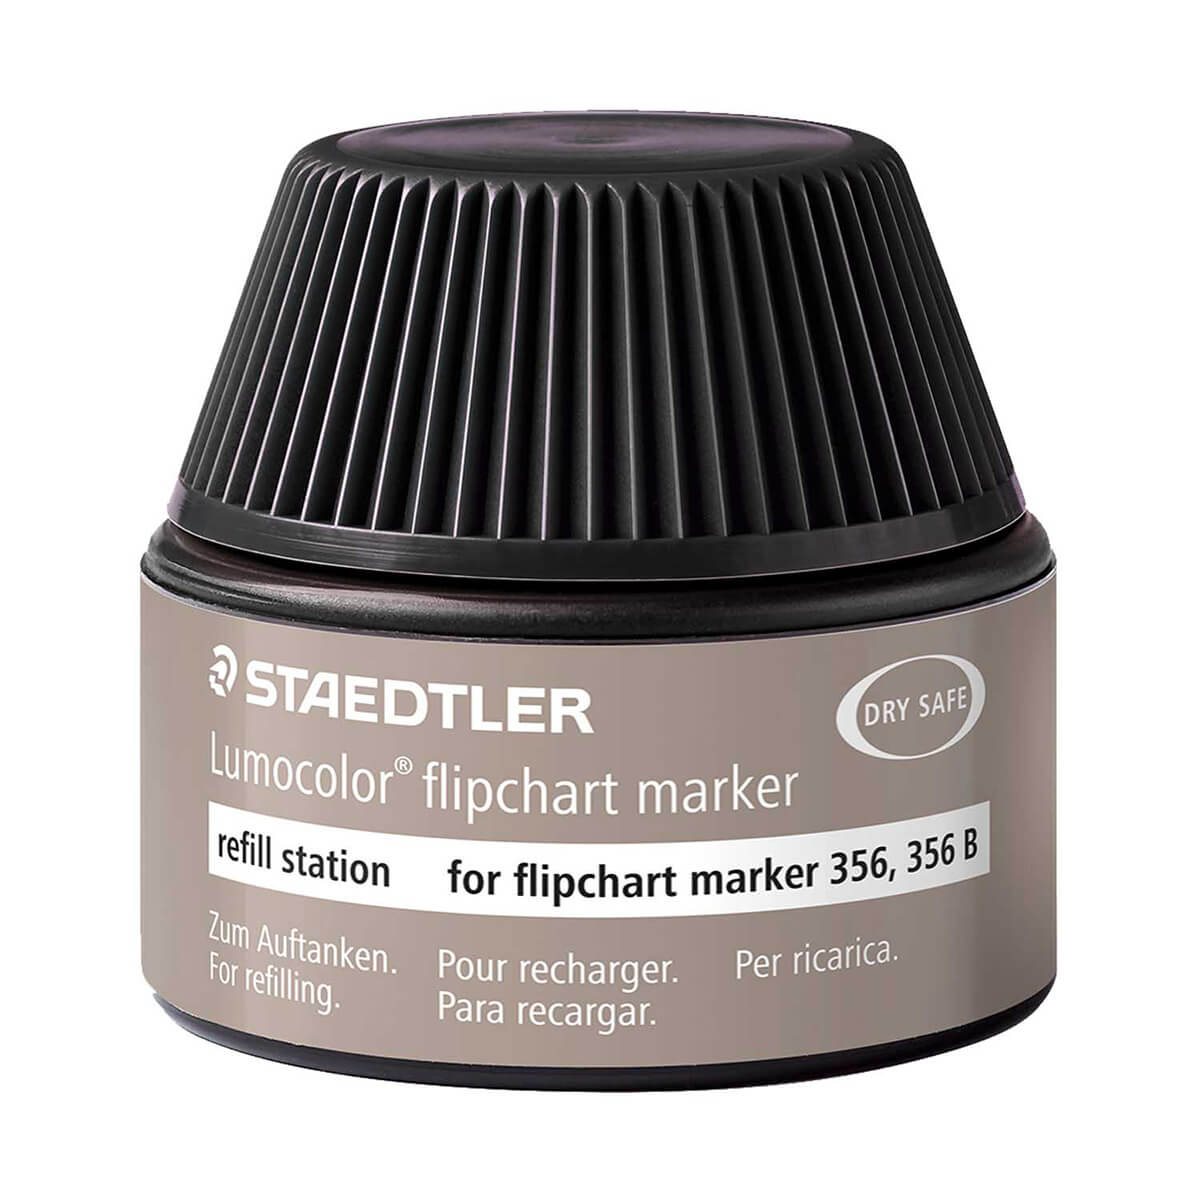 Refill Ink Flipchart Marker 356, 356 b Black